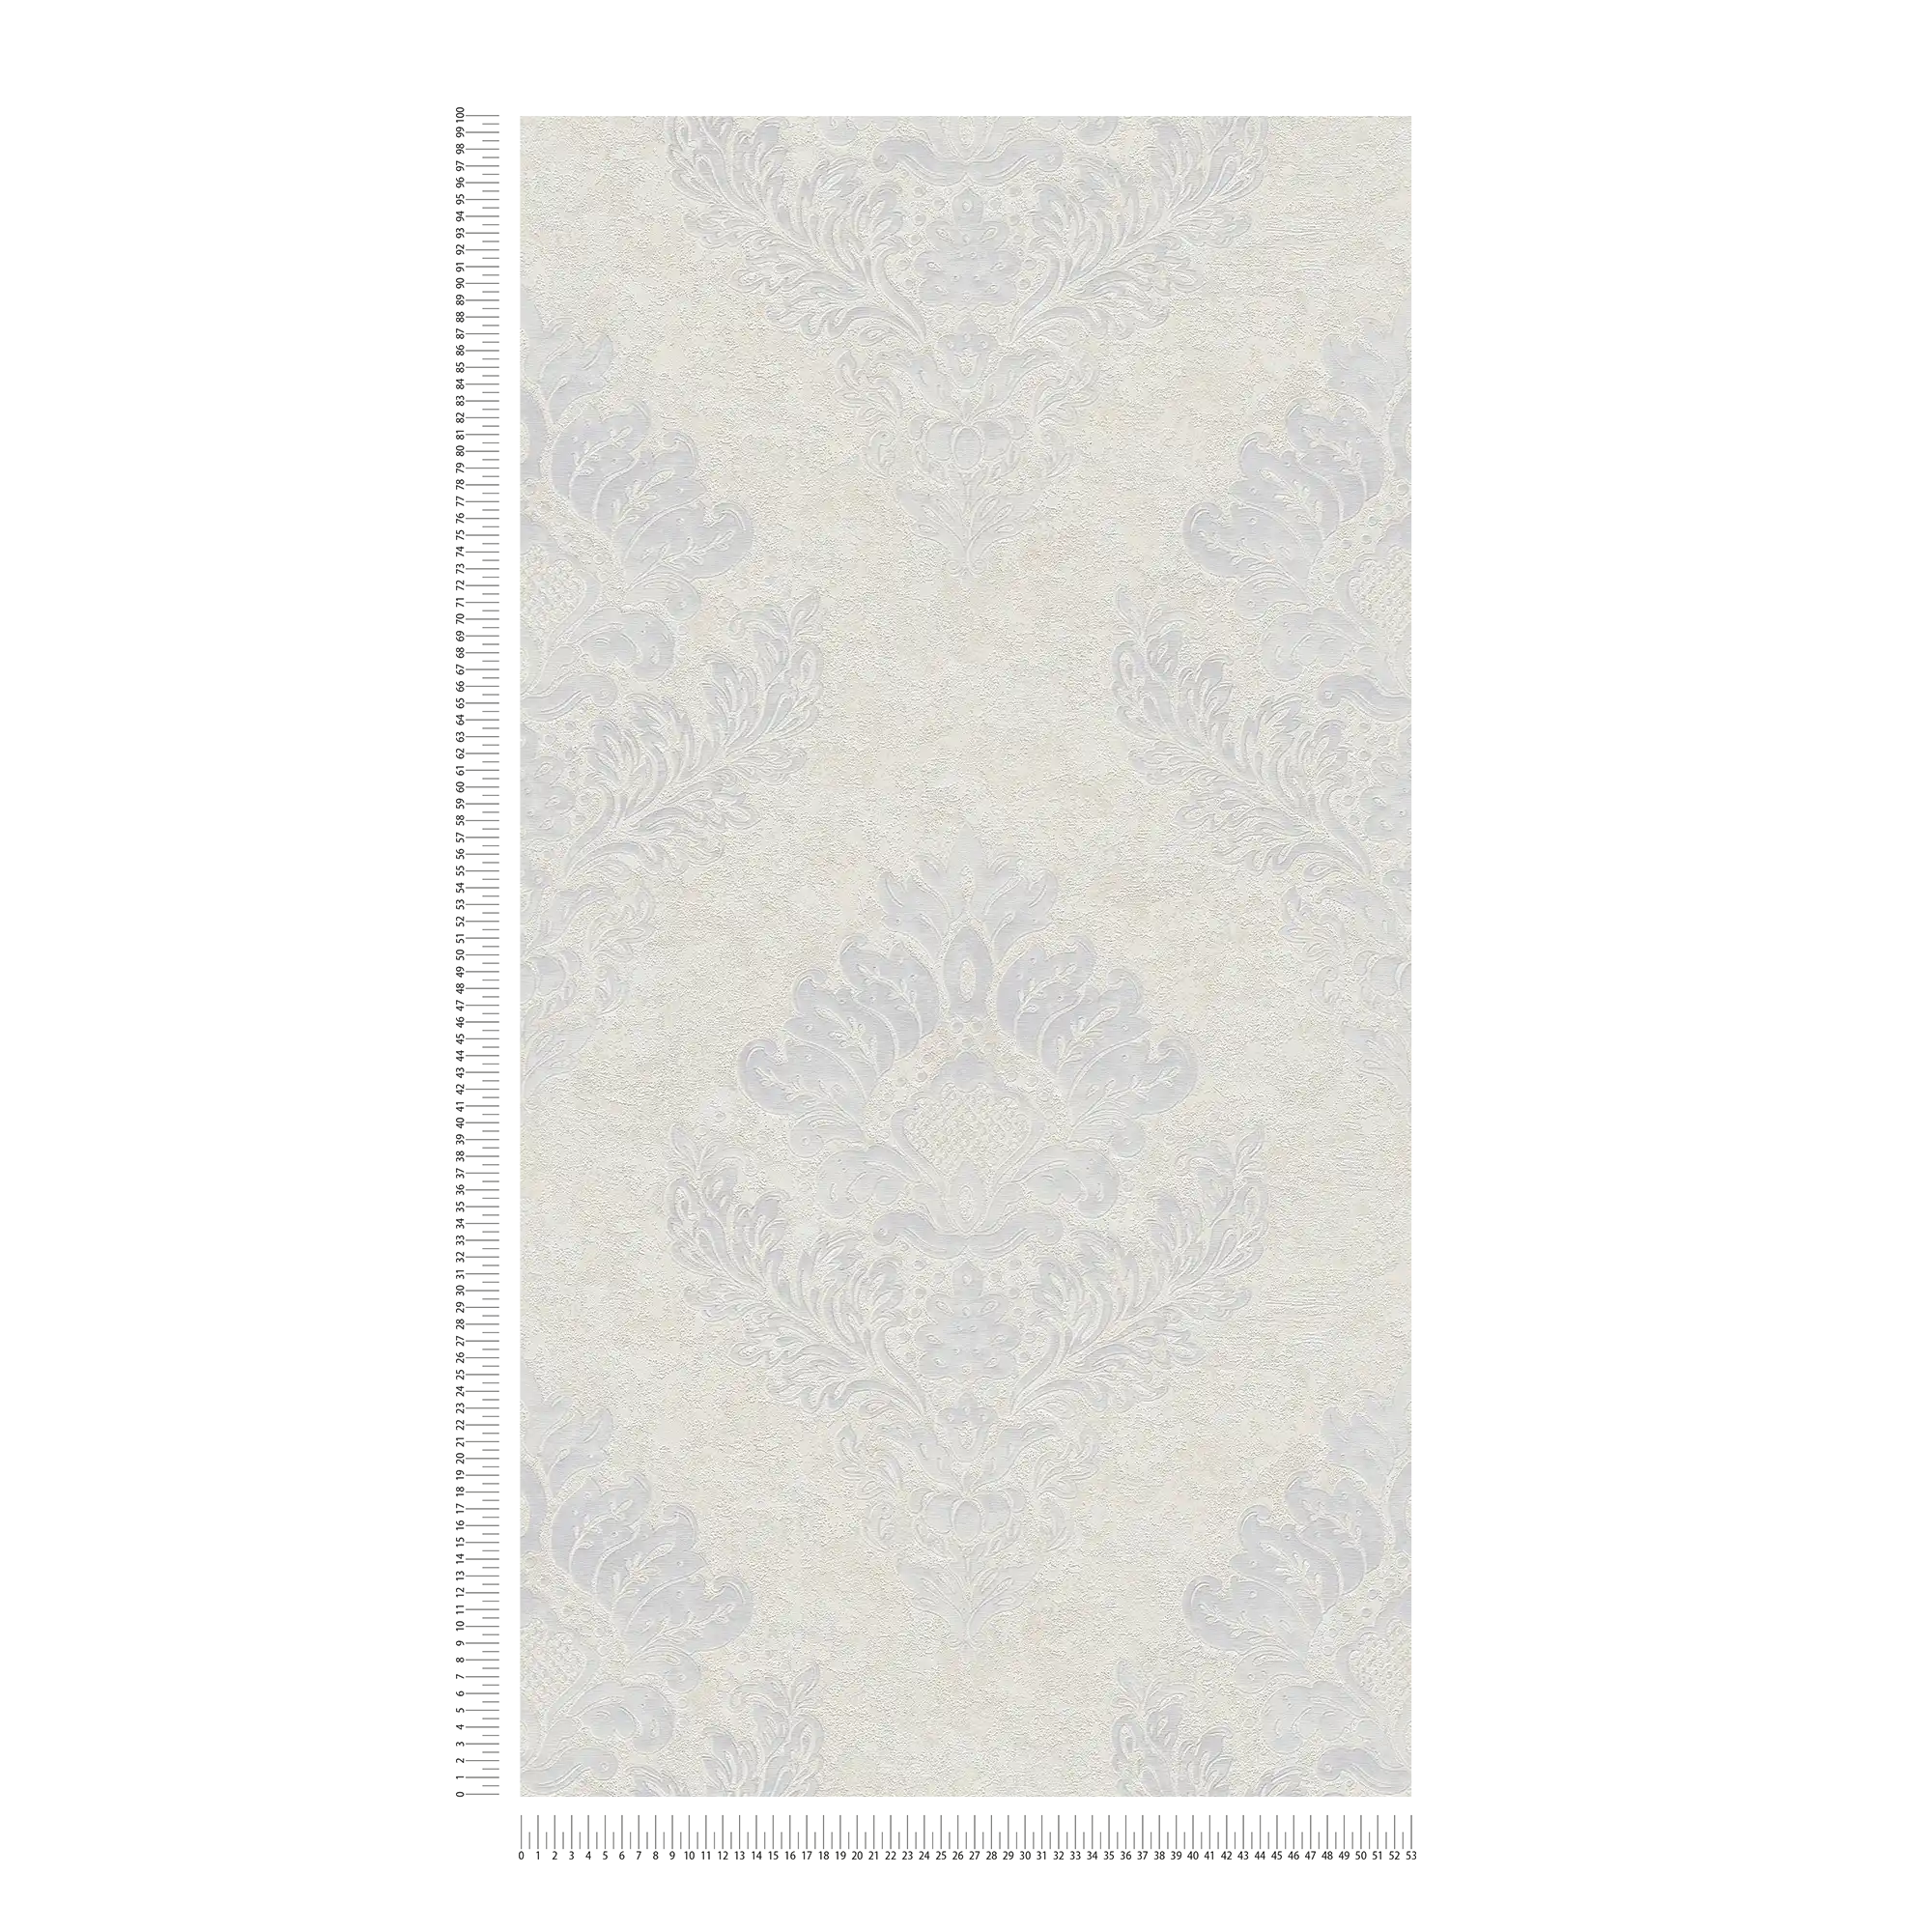             Carta da parati in tessuto non tessuto con ornamenti floreali e lucentezza metallica - beige, grigio, bianco
        